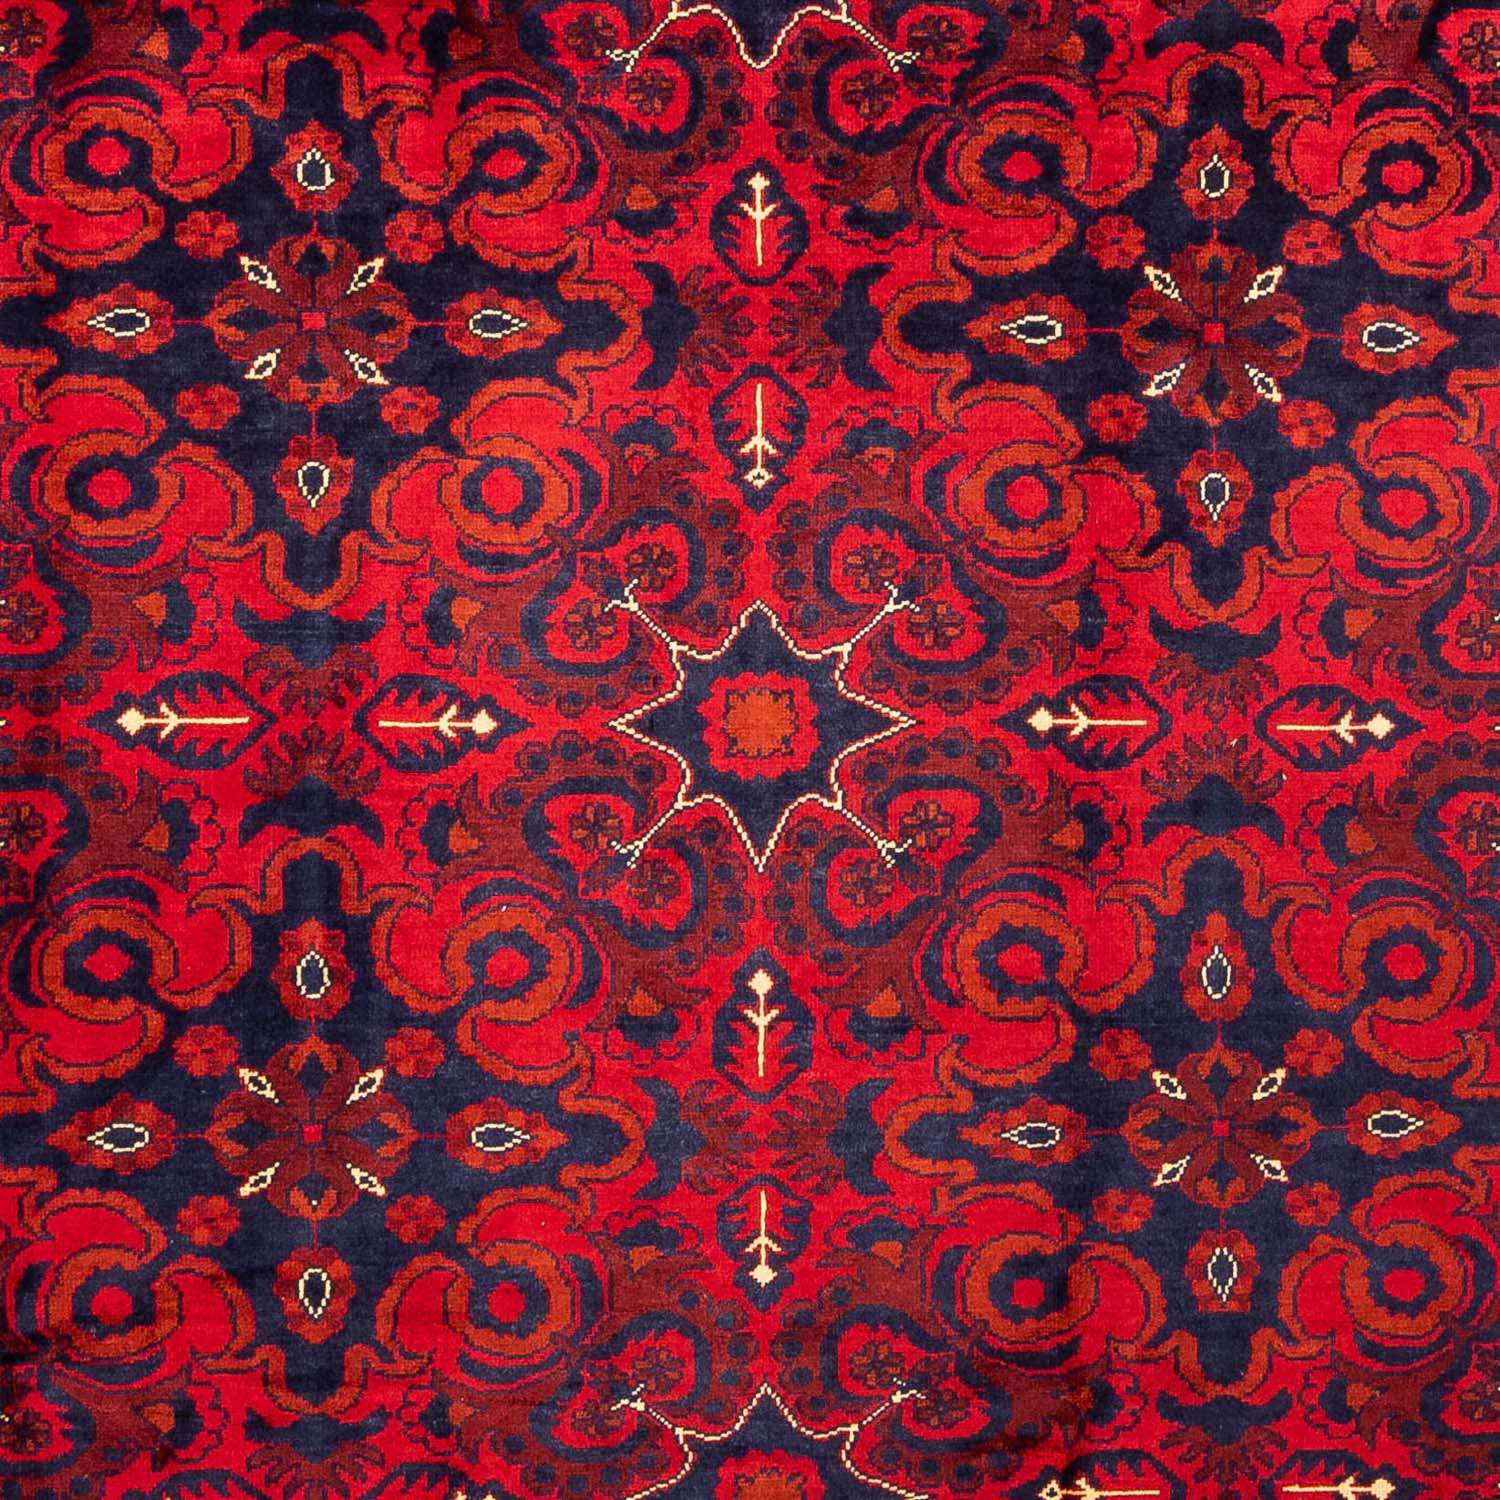 Afghan Teppich - Kunduz 282 x 200 cm